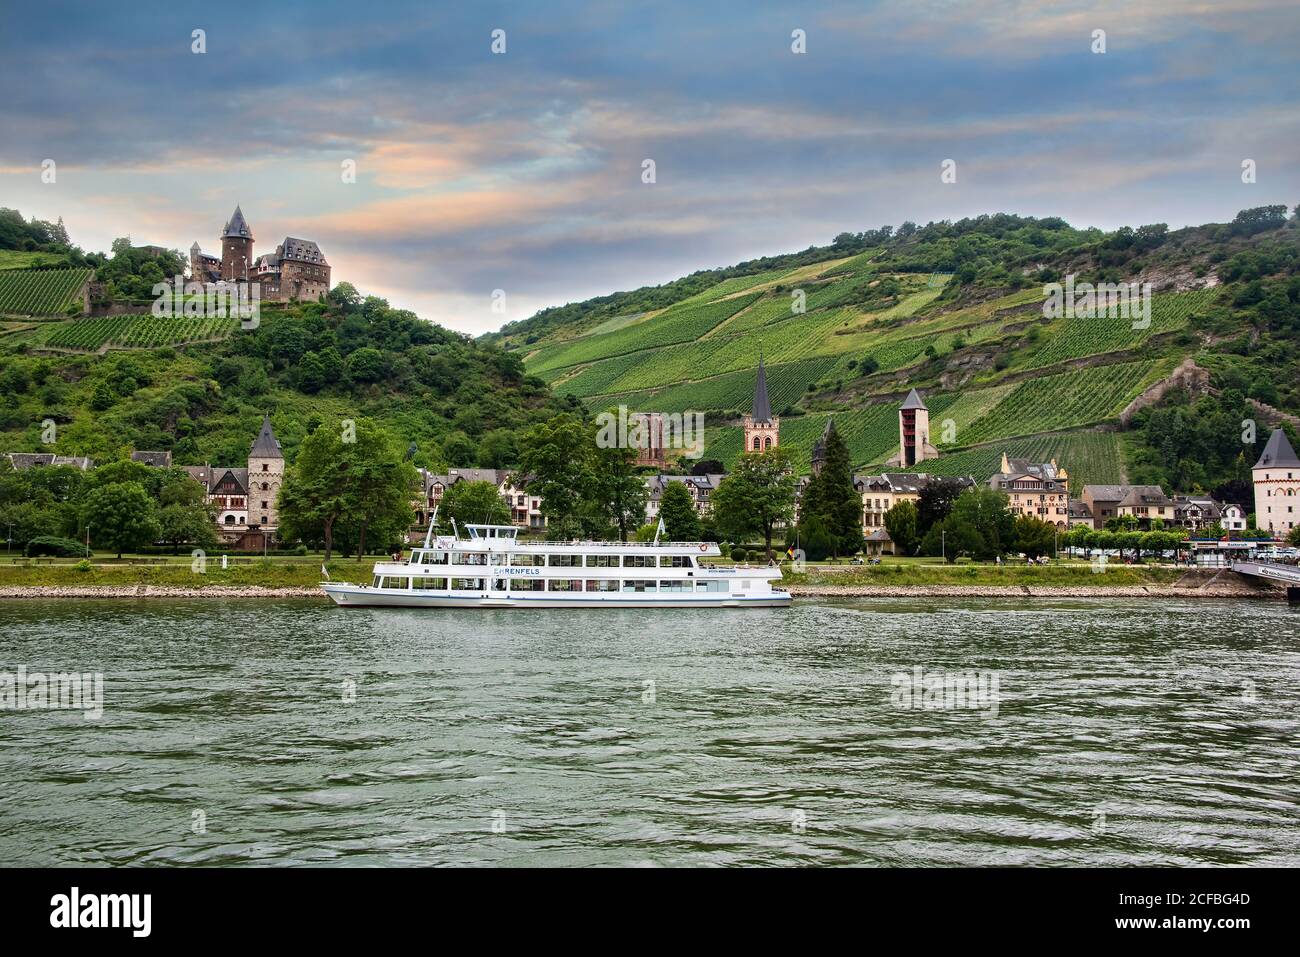 Bacharach, Allemagne - 16 juillet 2017 : bateau fluvial ancré dans la ville pittoresque du quartier de Mayence-Bingen en Rhénanie-Palatinat, Allemagne. Banque D'Images